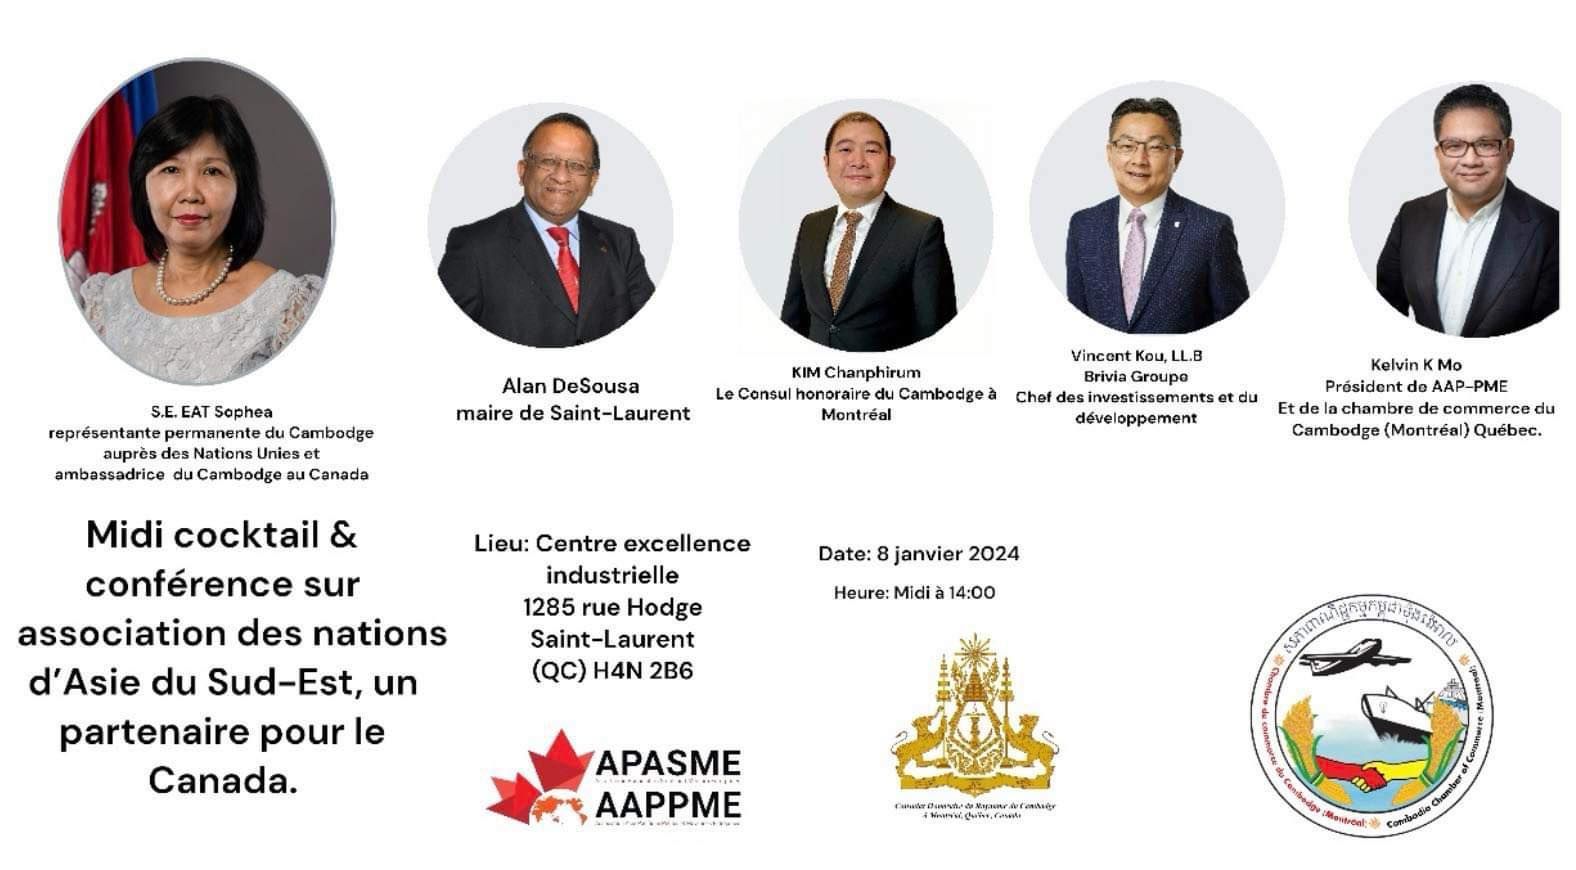 Midi cocktail & conférence sur l’association des nations d’Asie du Sud-Est - Un partenaire d’affaires pour le Canada